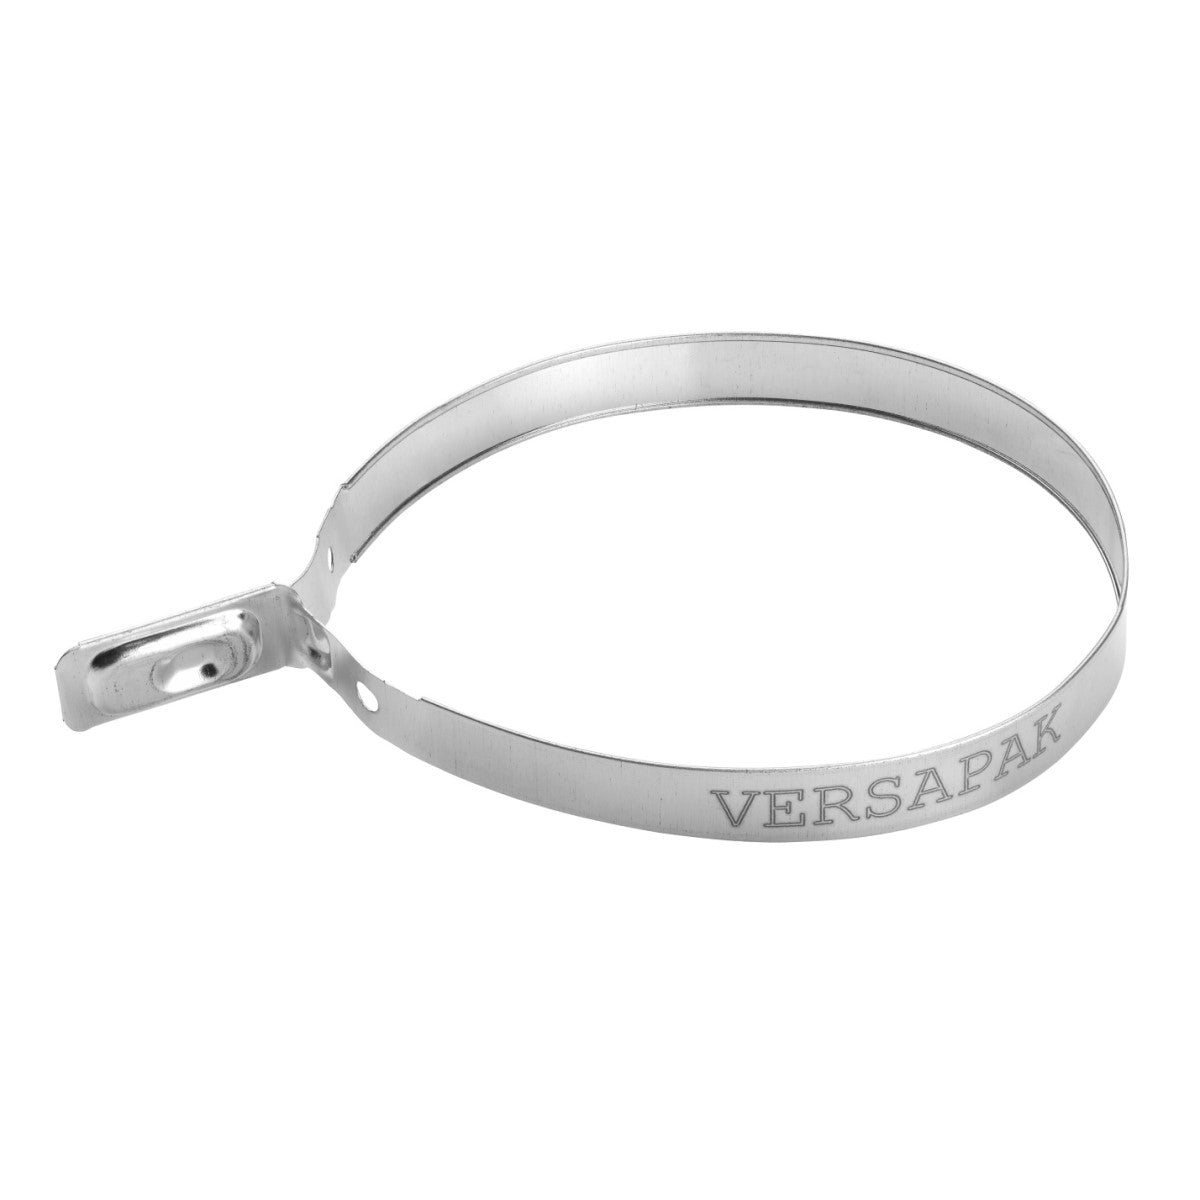 Versapak VersaMet - Heavy Duty Metal Security Seal